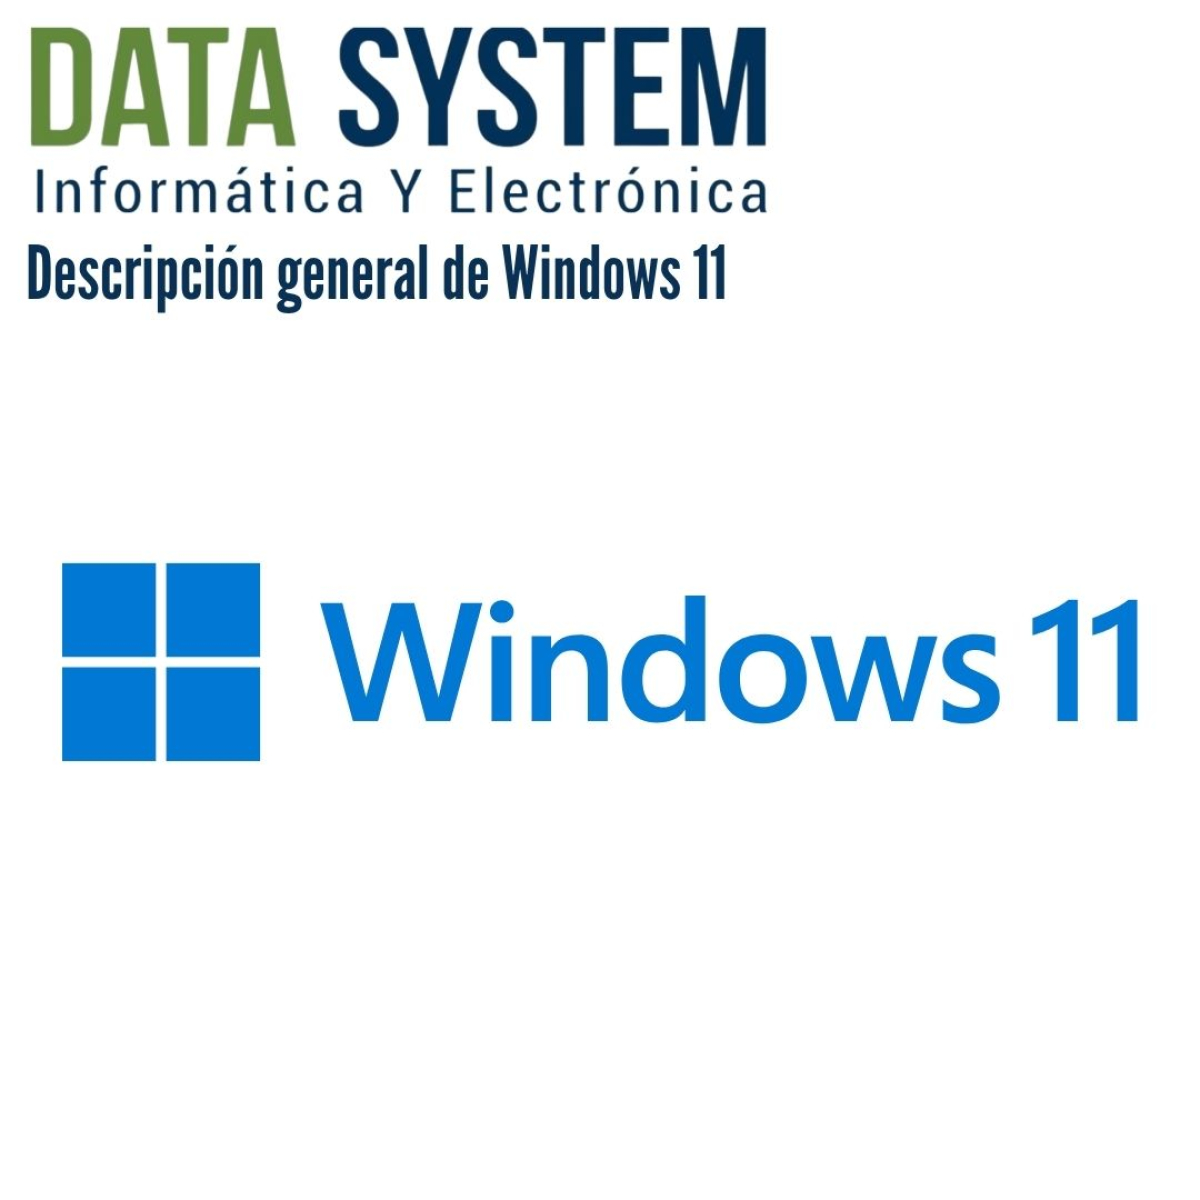 Descripción general de Windows 11